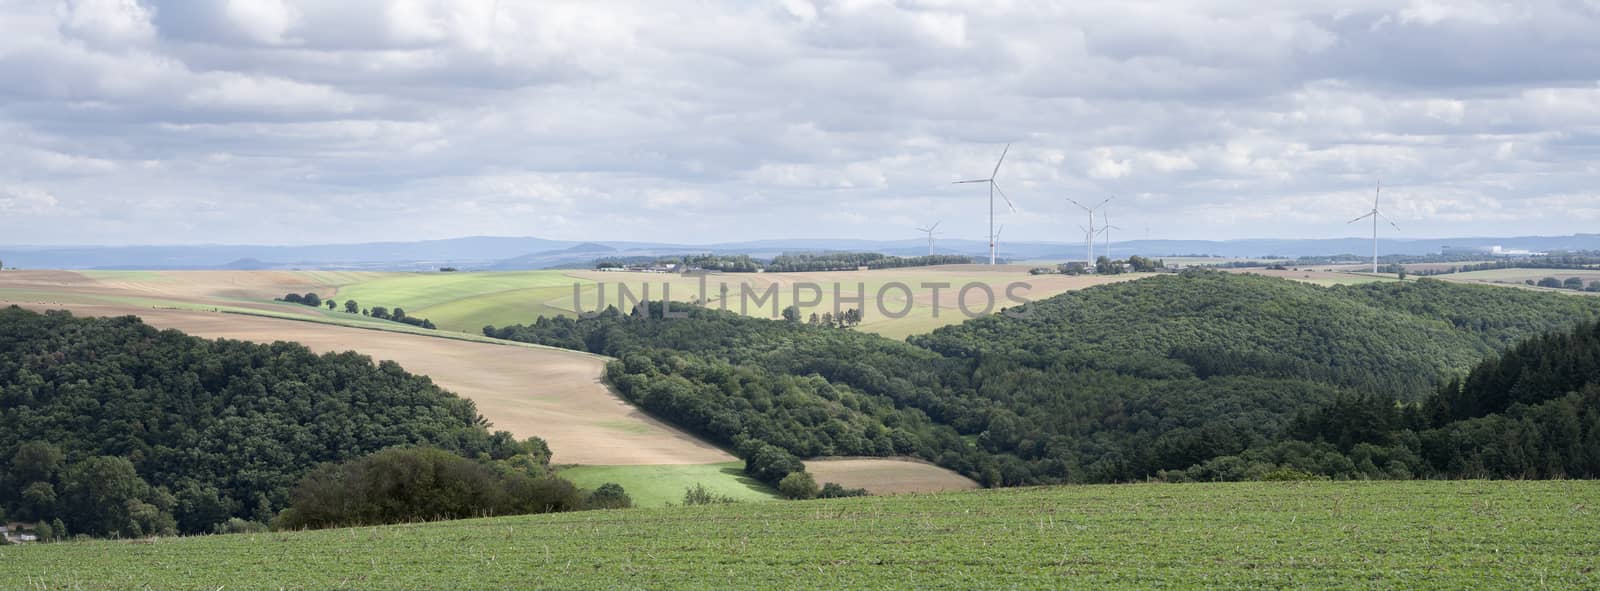 fields and wiind turbines in german eifel by ahavelaar